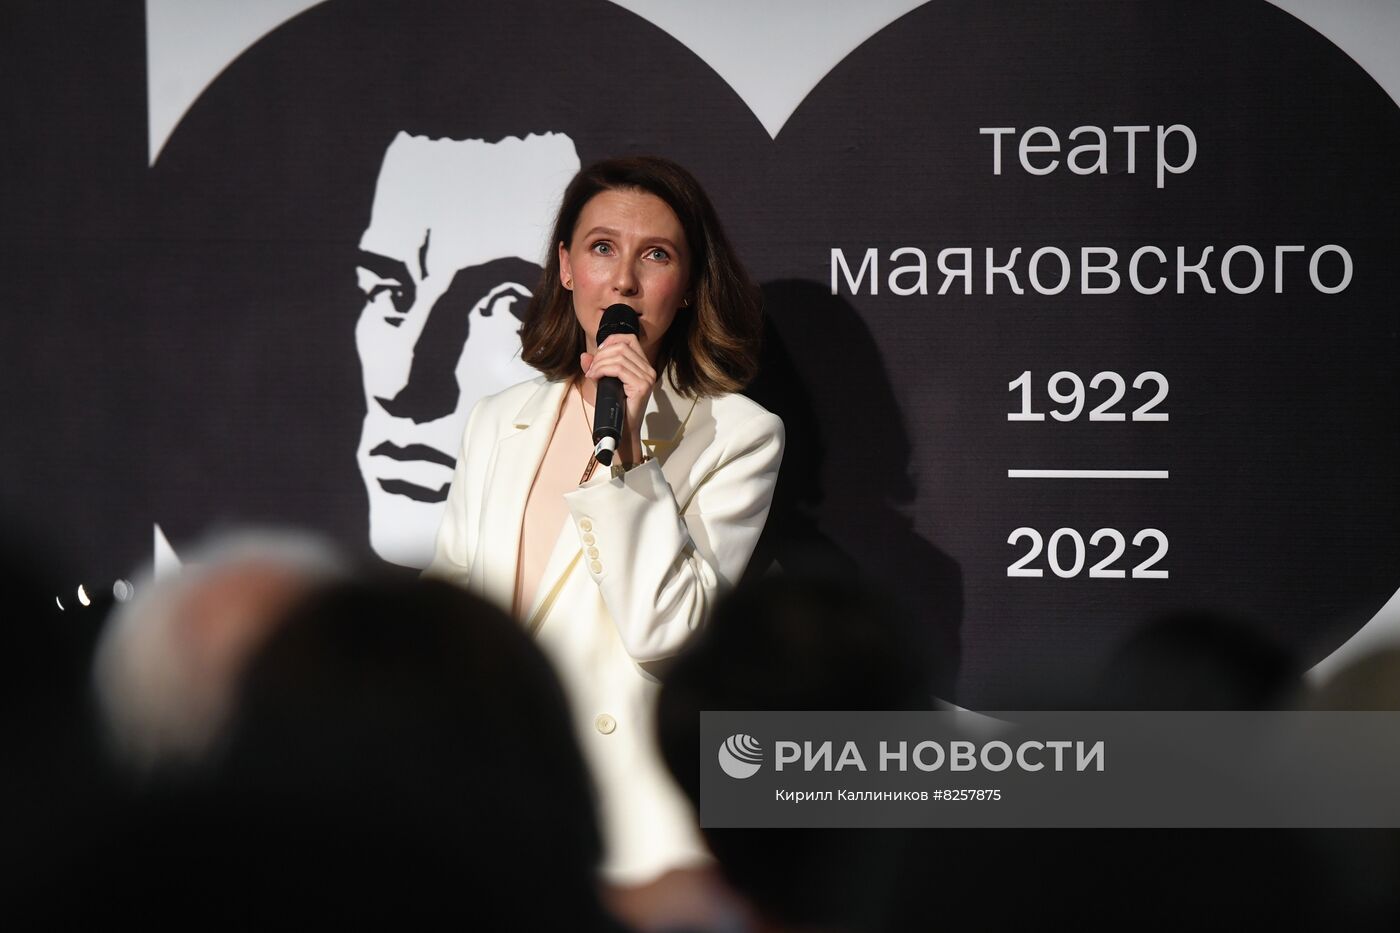 Сбор труппы и открытие 100-го сезона театра Маяковского